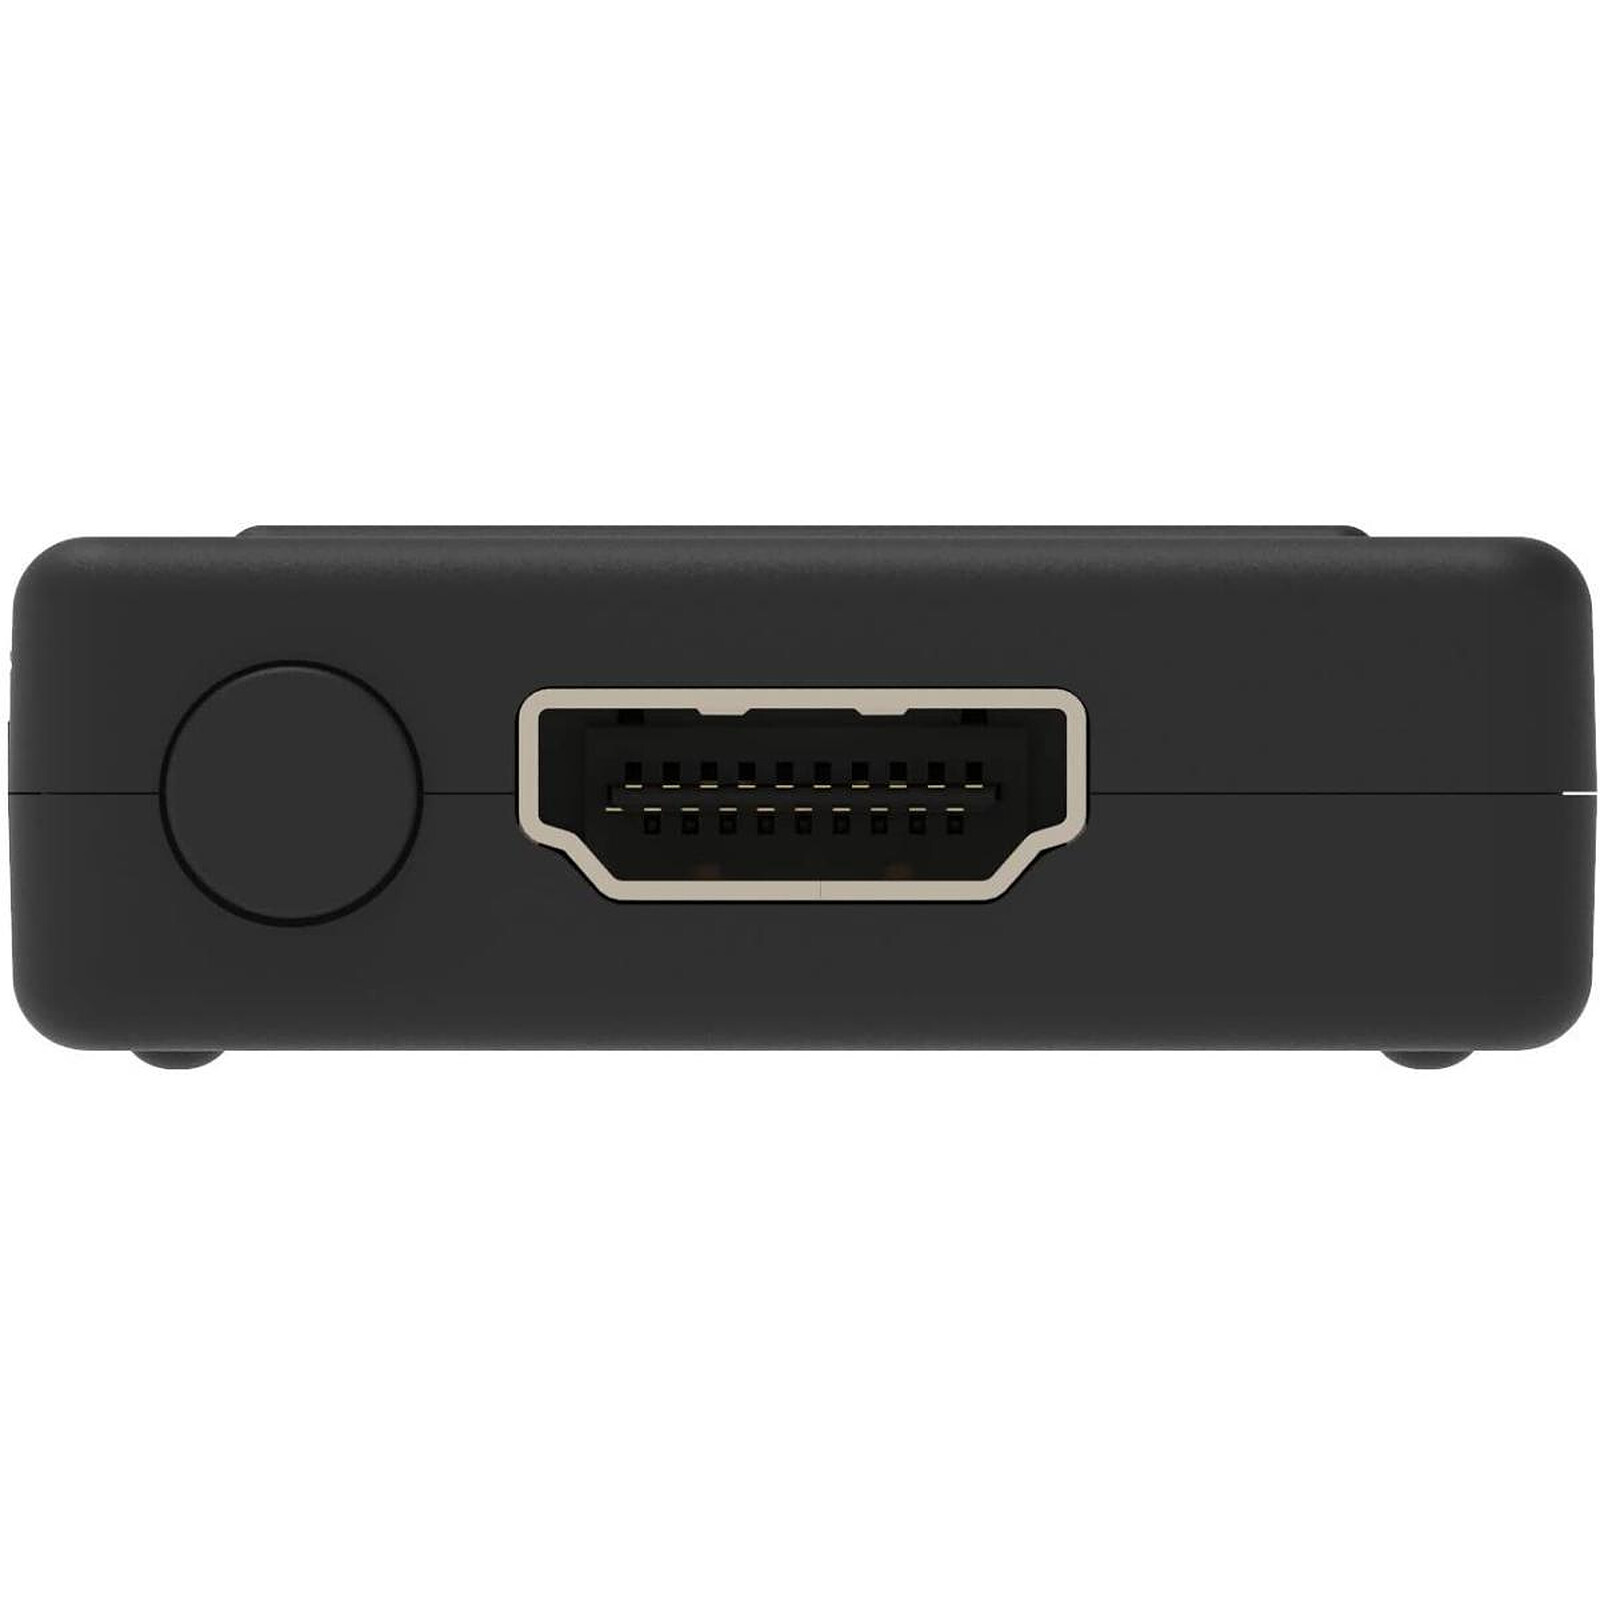 Retro-Bit Prism Adaptateur HDMI GameCube - Console rétrogaming - LDLC